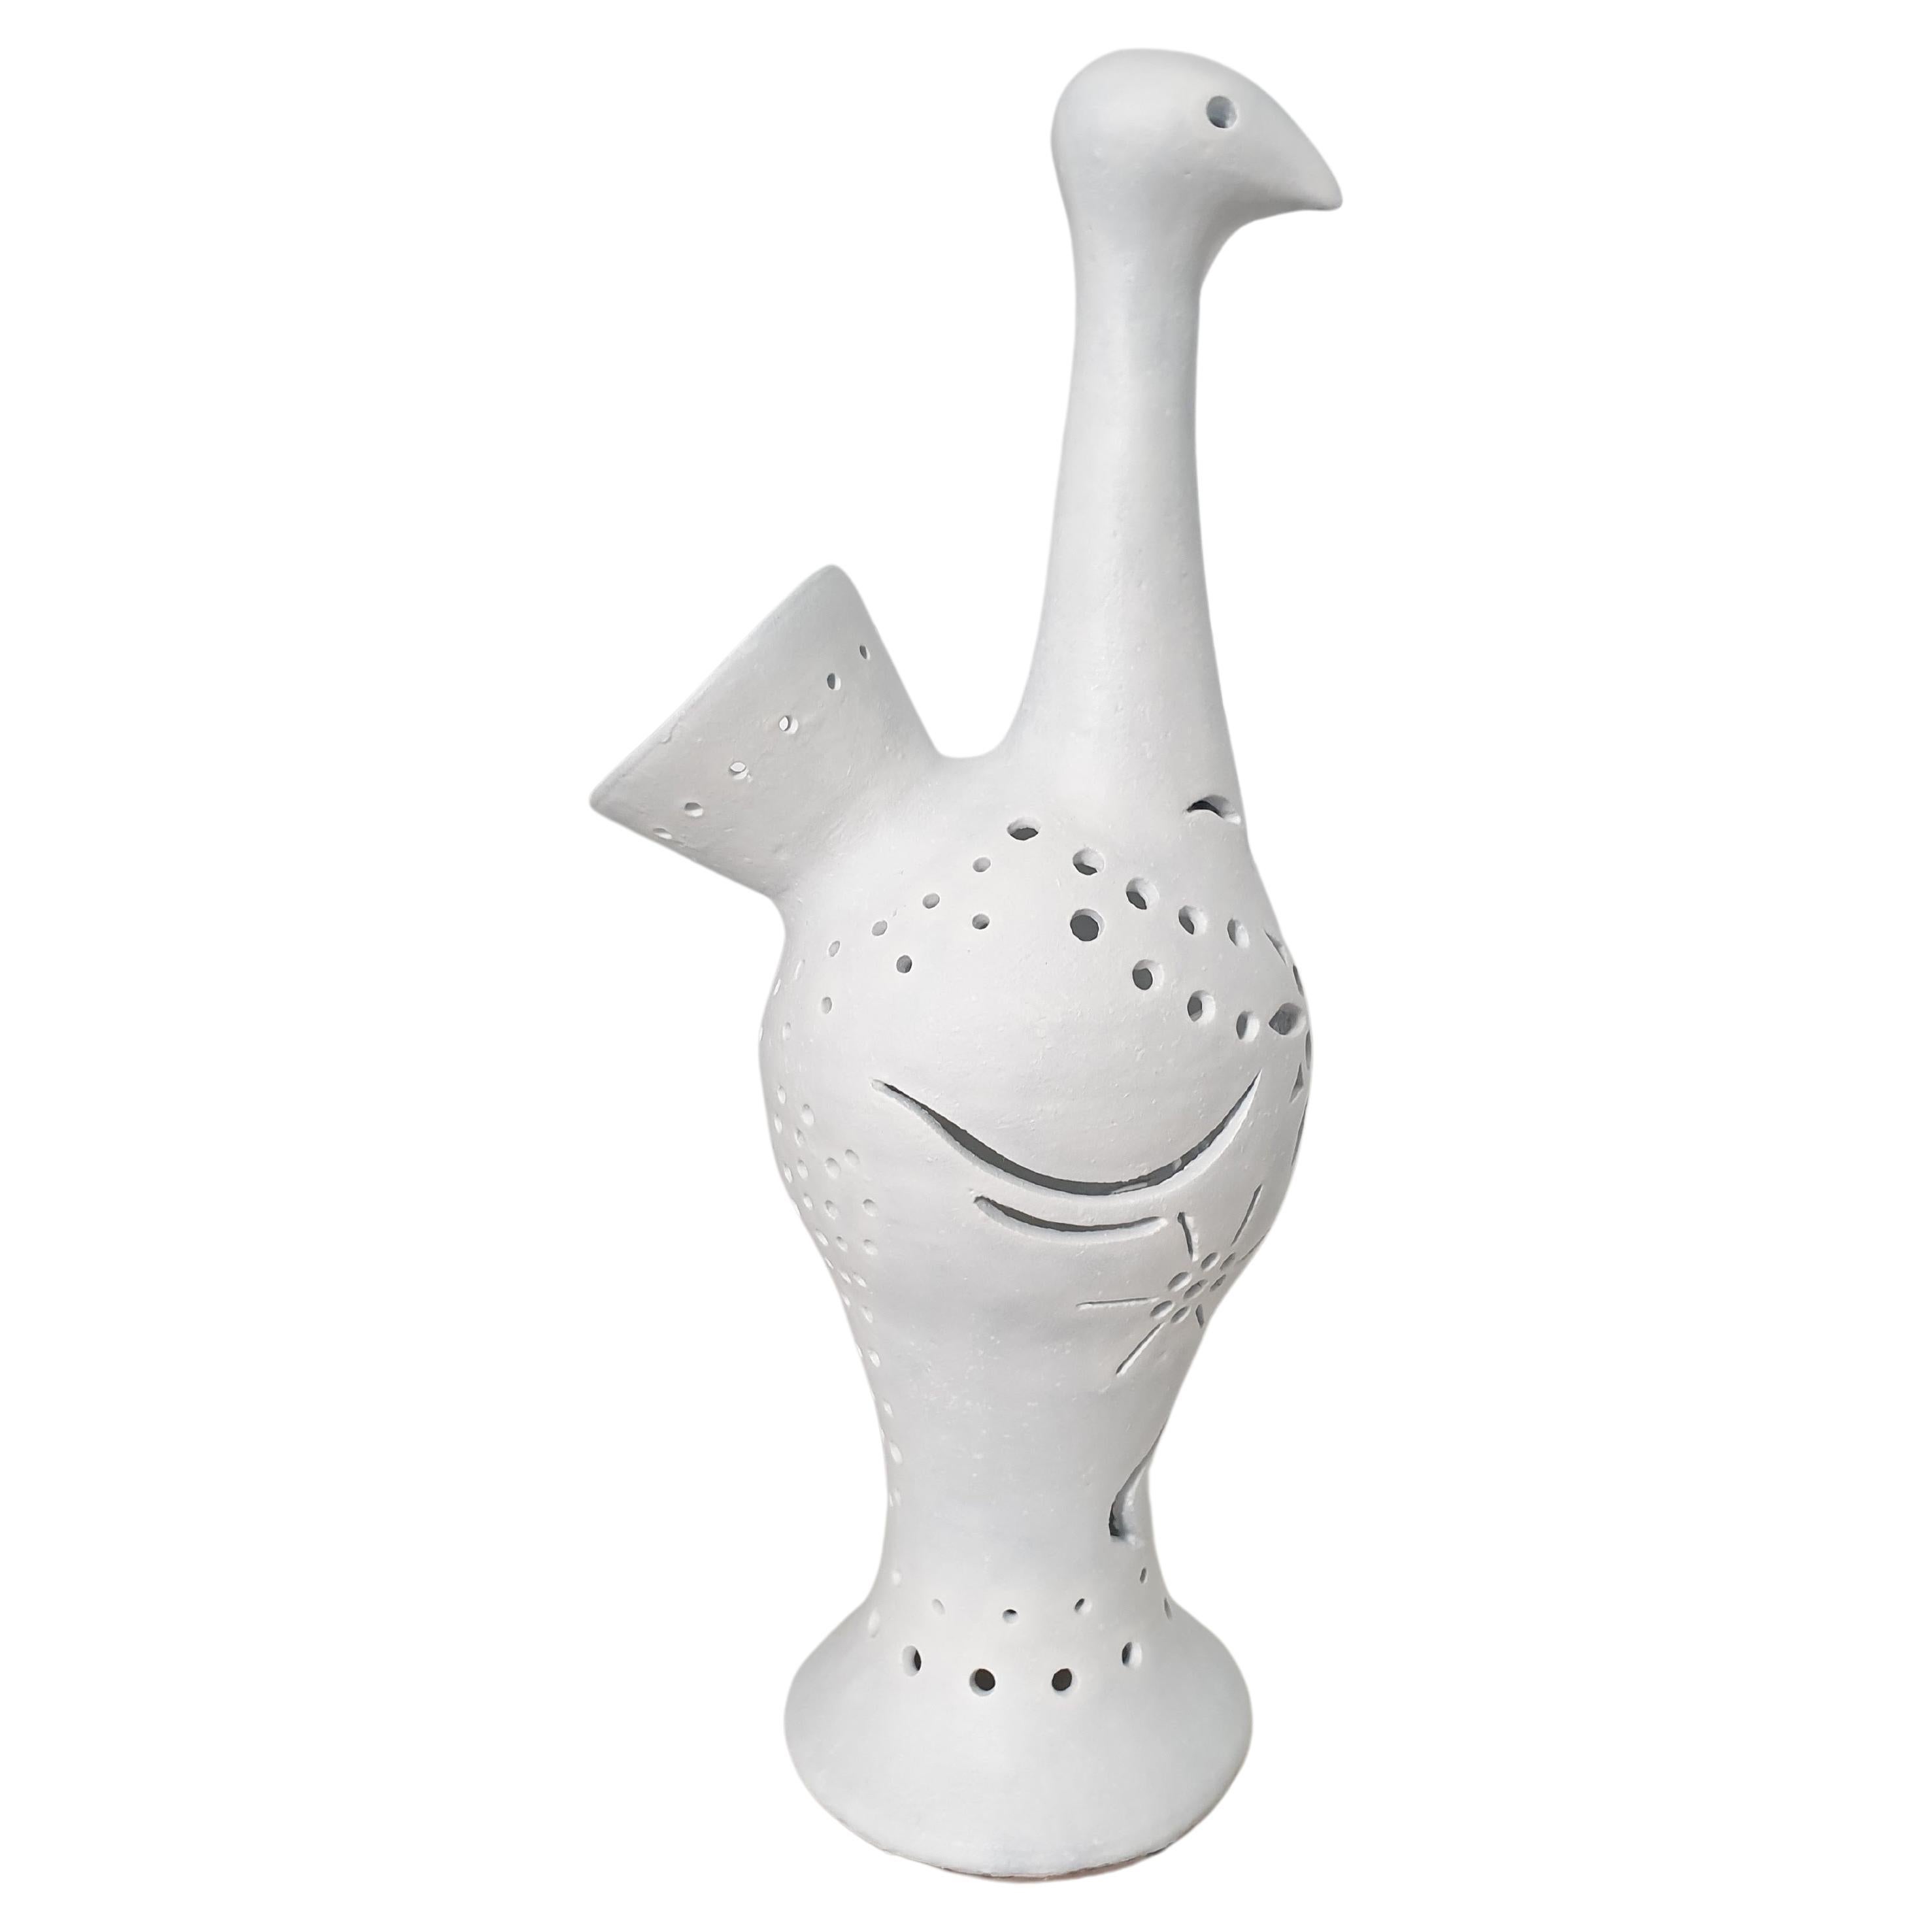 Grande et imposante lampe française en céramique émaillée blanc mat représentant un paon stylisé. La lampe est inhabituelle car la douille se trouve à l'intérieur et la lumière jaillit par les entailles de la surface de l'oiseau. La lampe sera